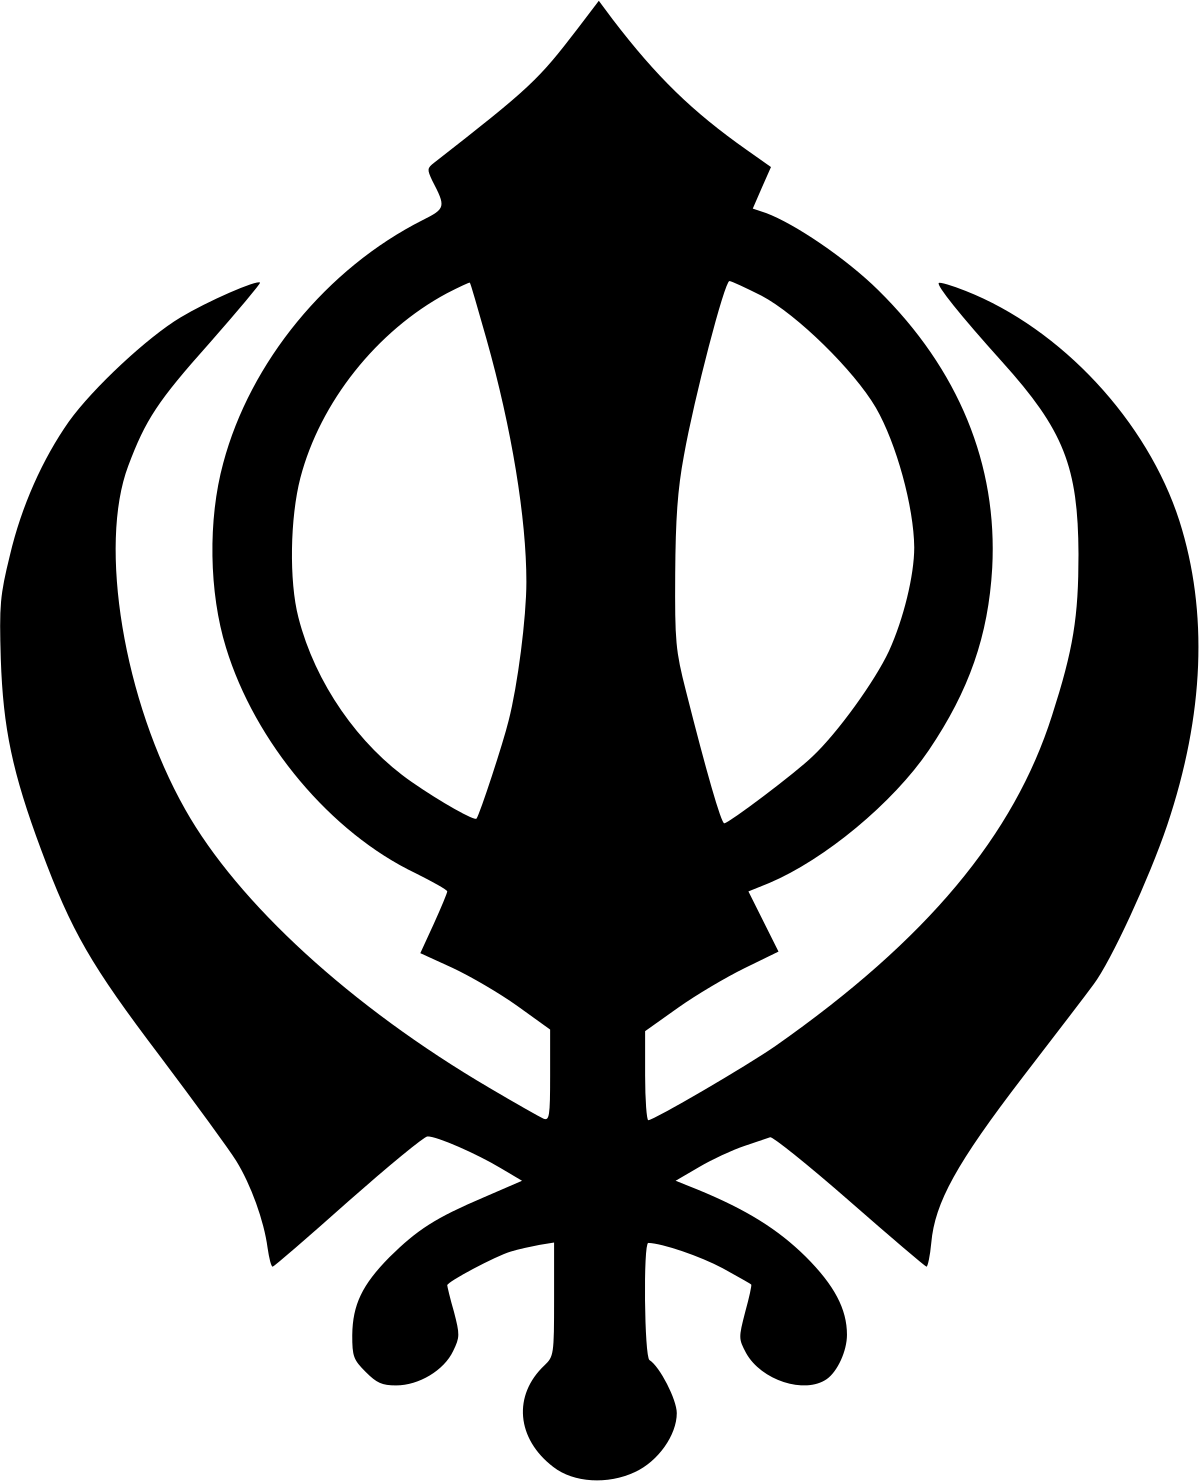 Black Symbol Logo - Khanda (Sikh symbol)